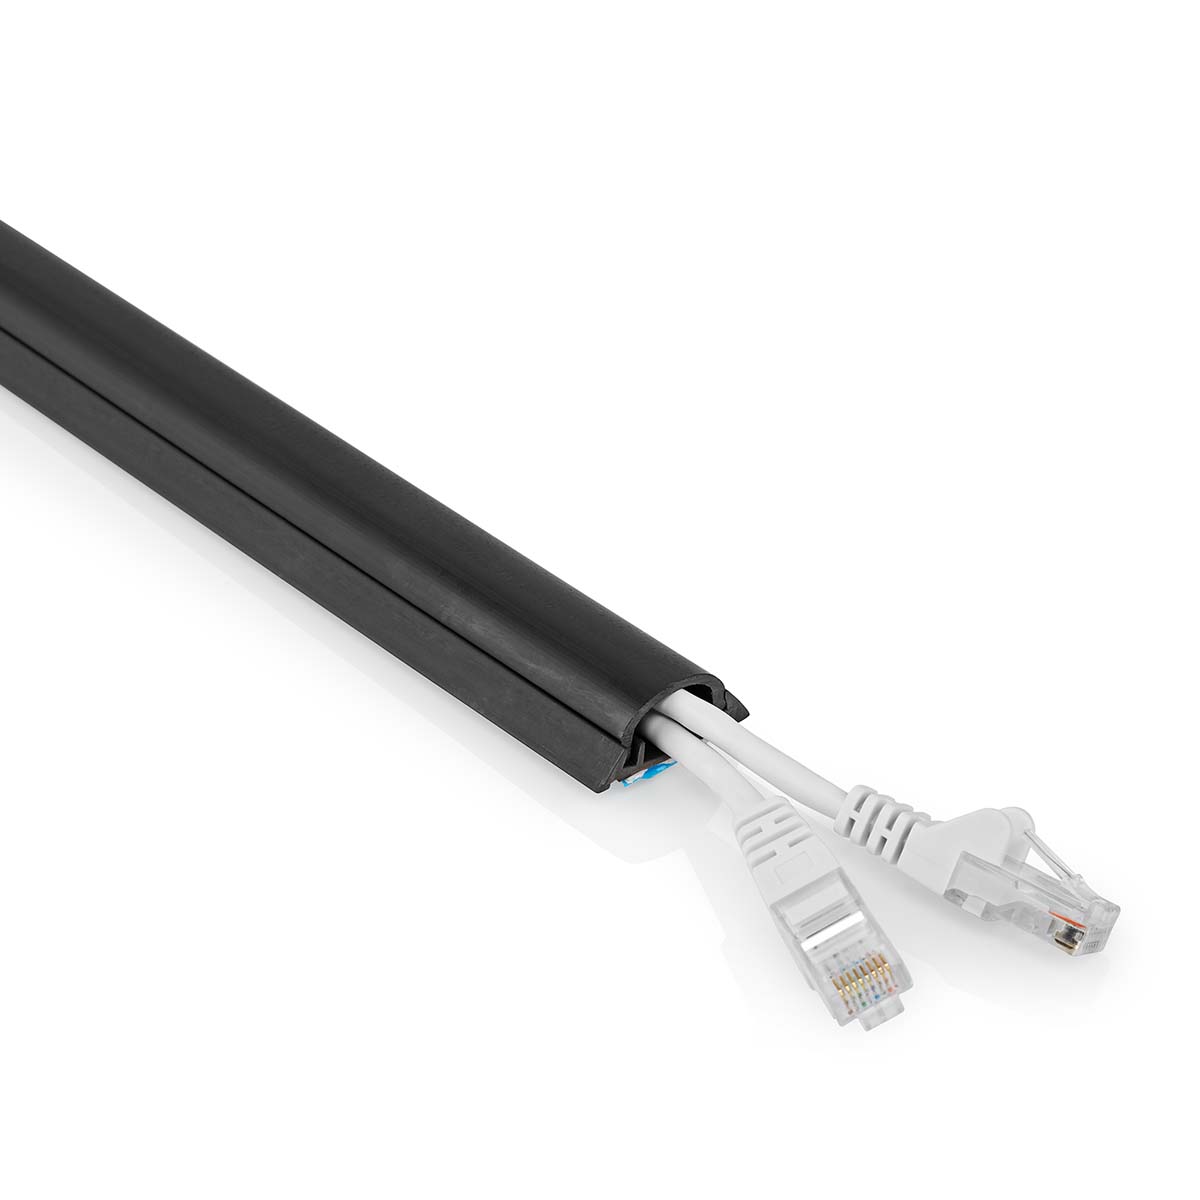 Kabelová lišta pro kabely do 12 mm, PVC, 0.5 m, černá (CMDT3312BK500)